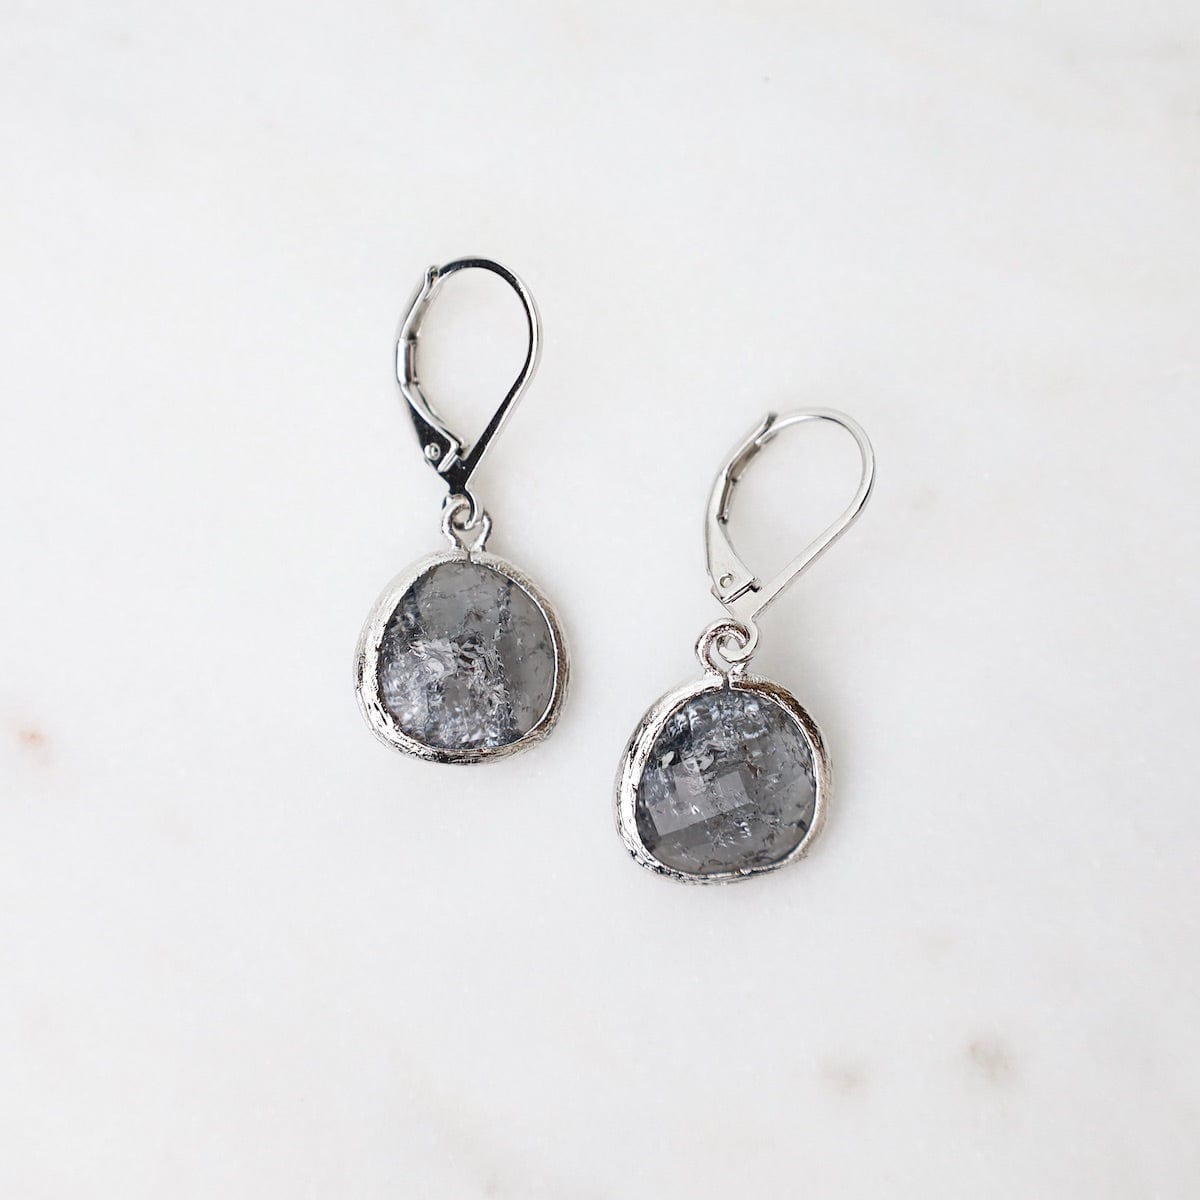 ear sterling silver grey rock crystal lever back earrings 40817721606375